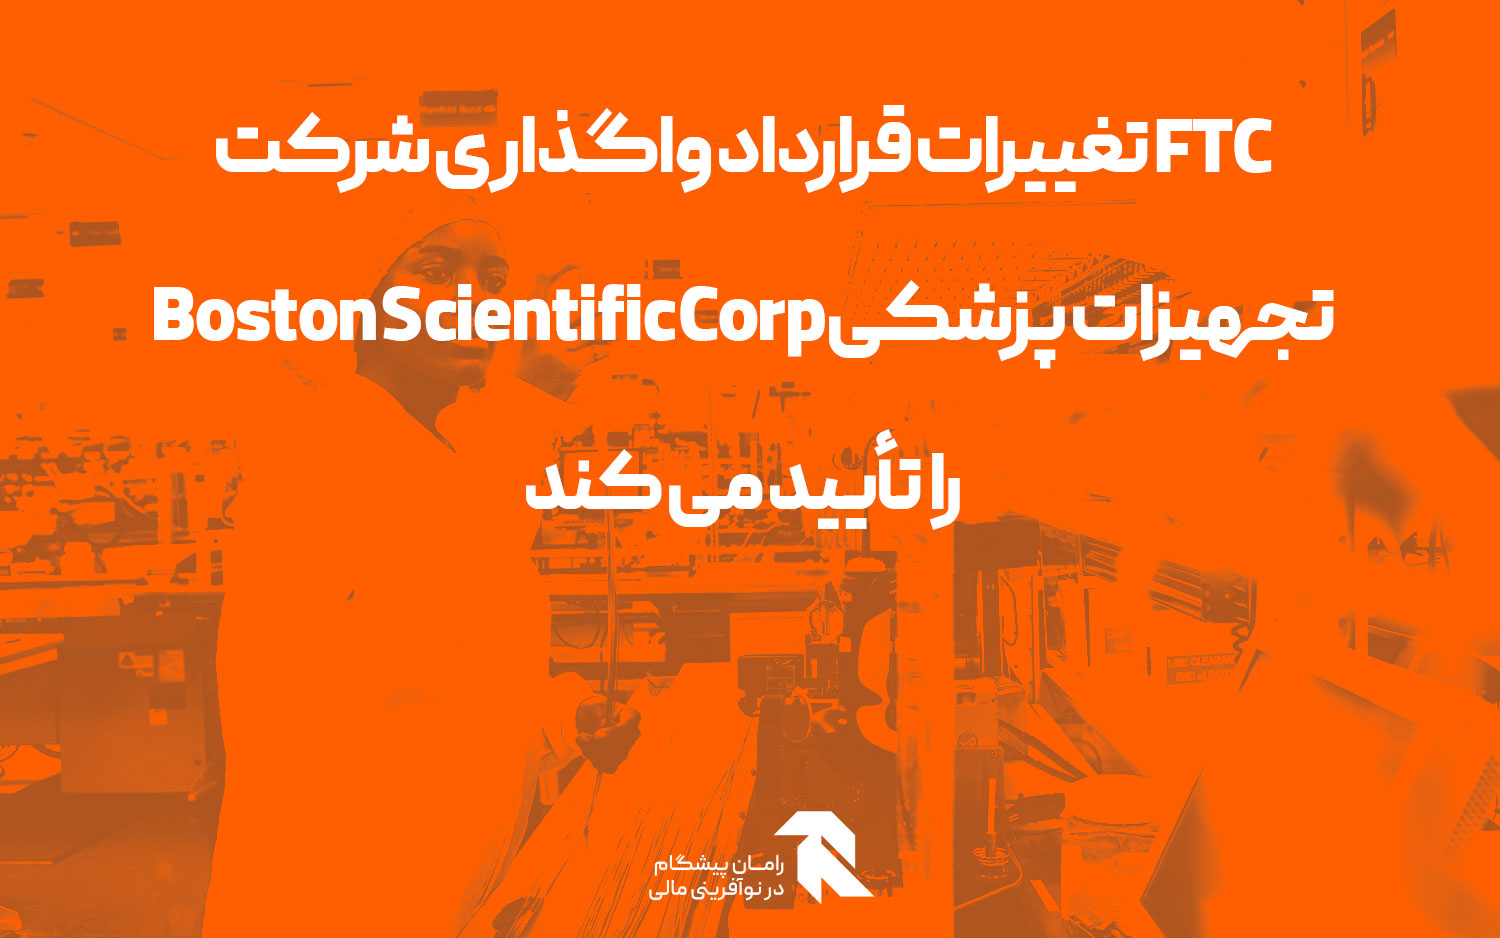 FTC تغییرات قرارداد واگذاری شرکت تجهیزات پزشکی Boston Scientific Corp را تأیید می کند